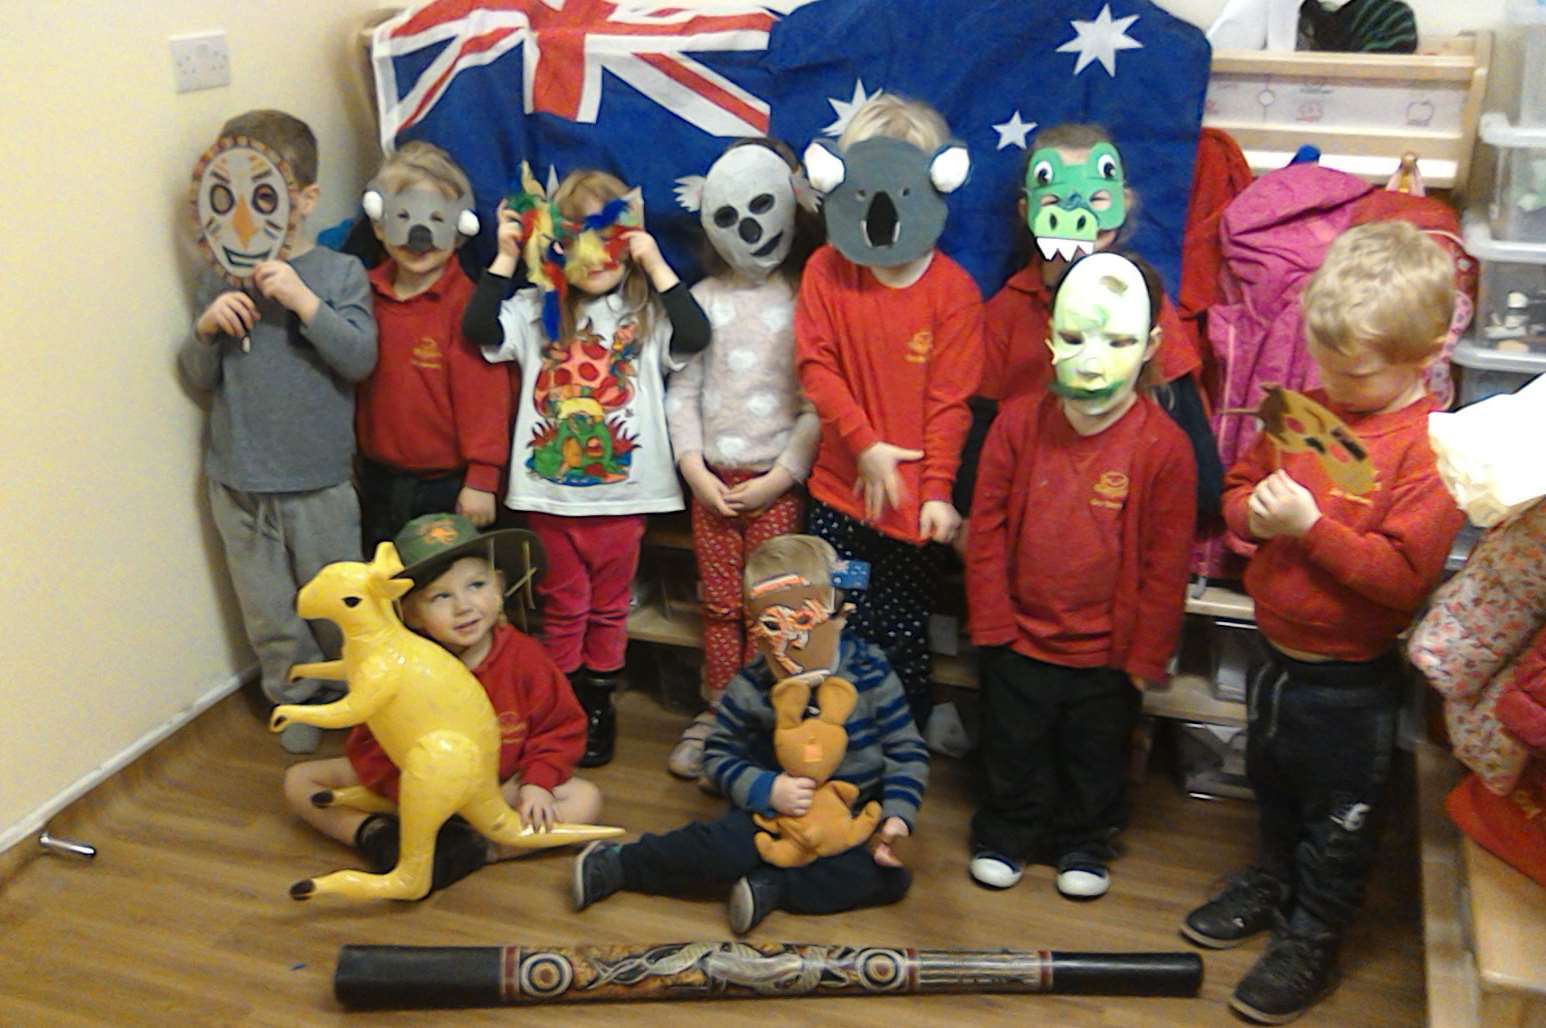 Dimples Day Nursery In Dartford Celebrates Australia Day